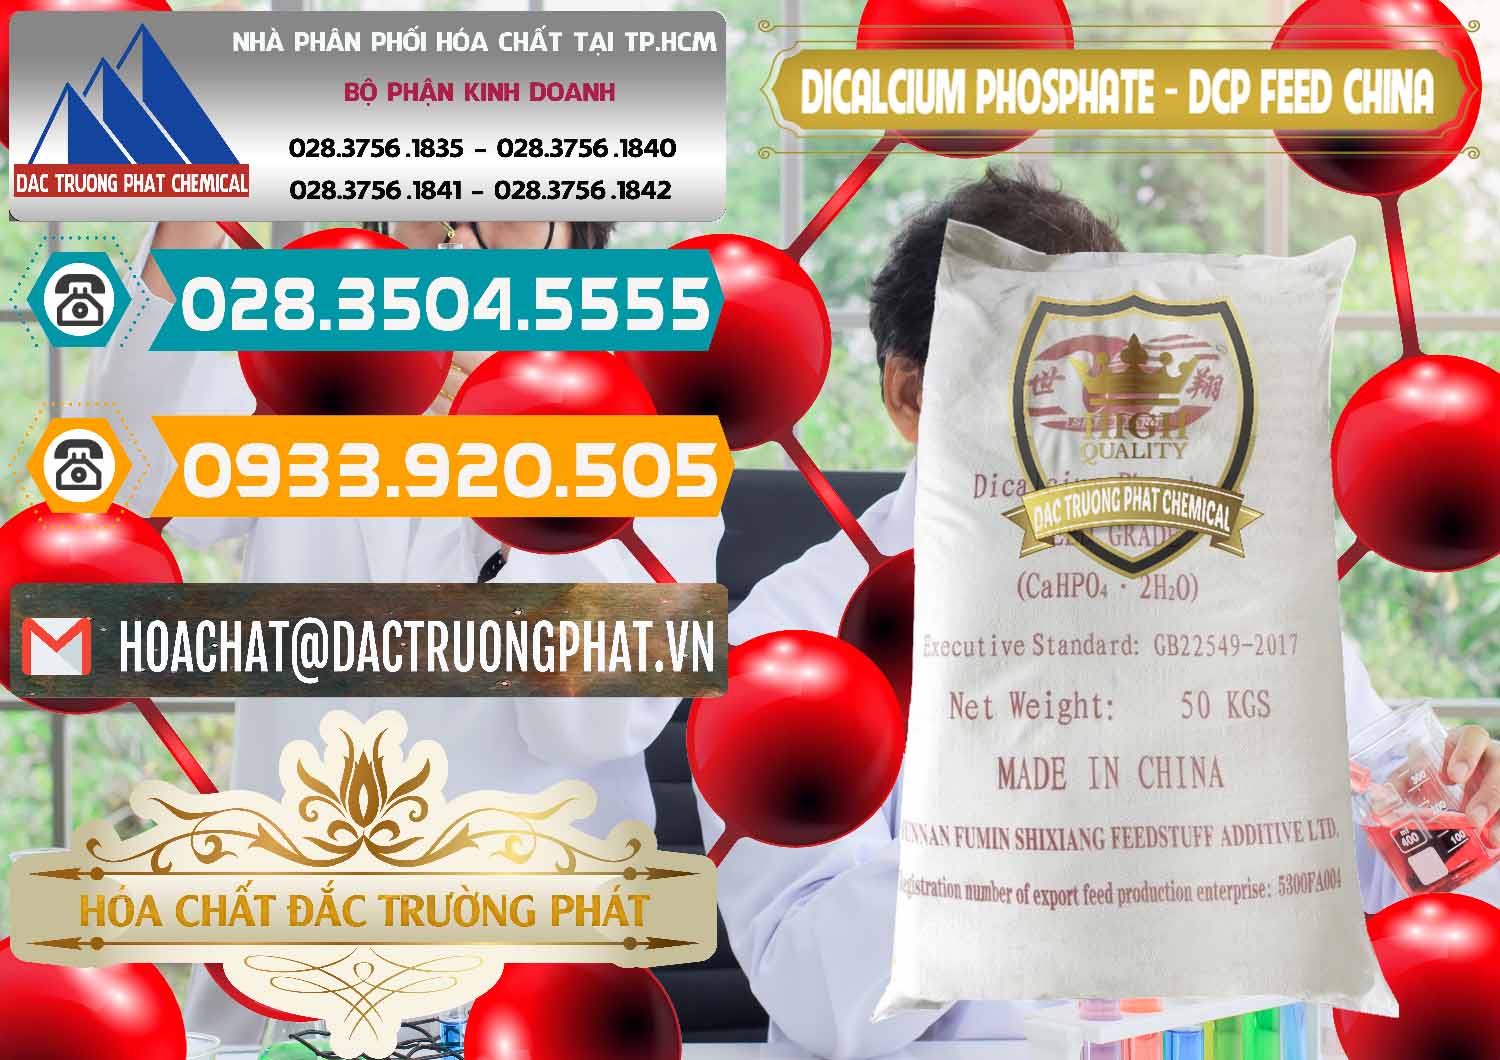 Nơi chuyên bán & phân phối Dicalcium Phosphate - DCP Feed Grade Trung Quốc China - 0296 - Kinh doanh - phân phối hóa chất tại TP.HCM - congtyhoachat.vn